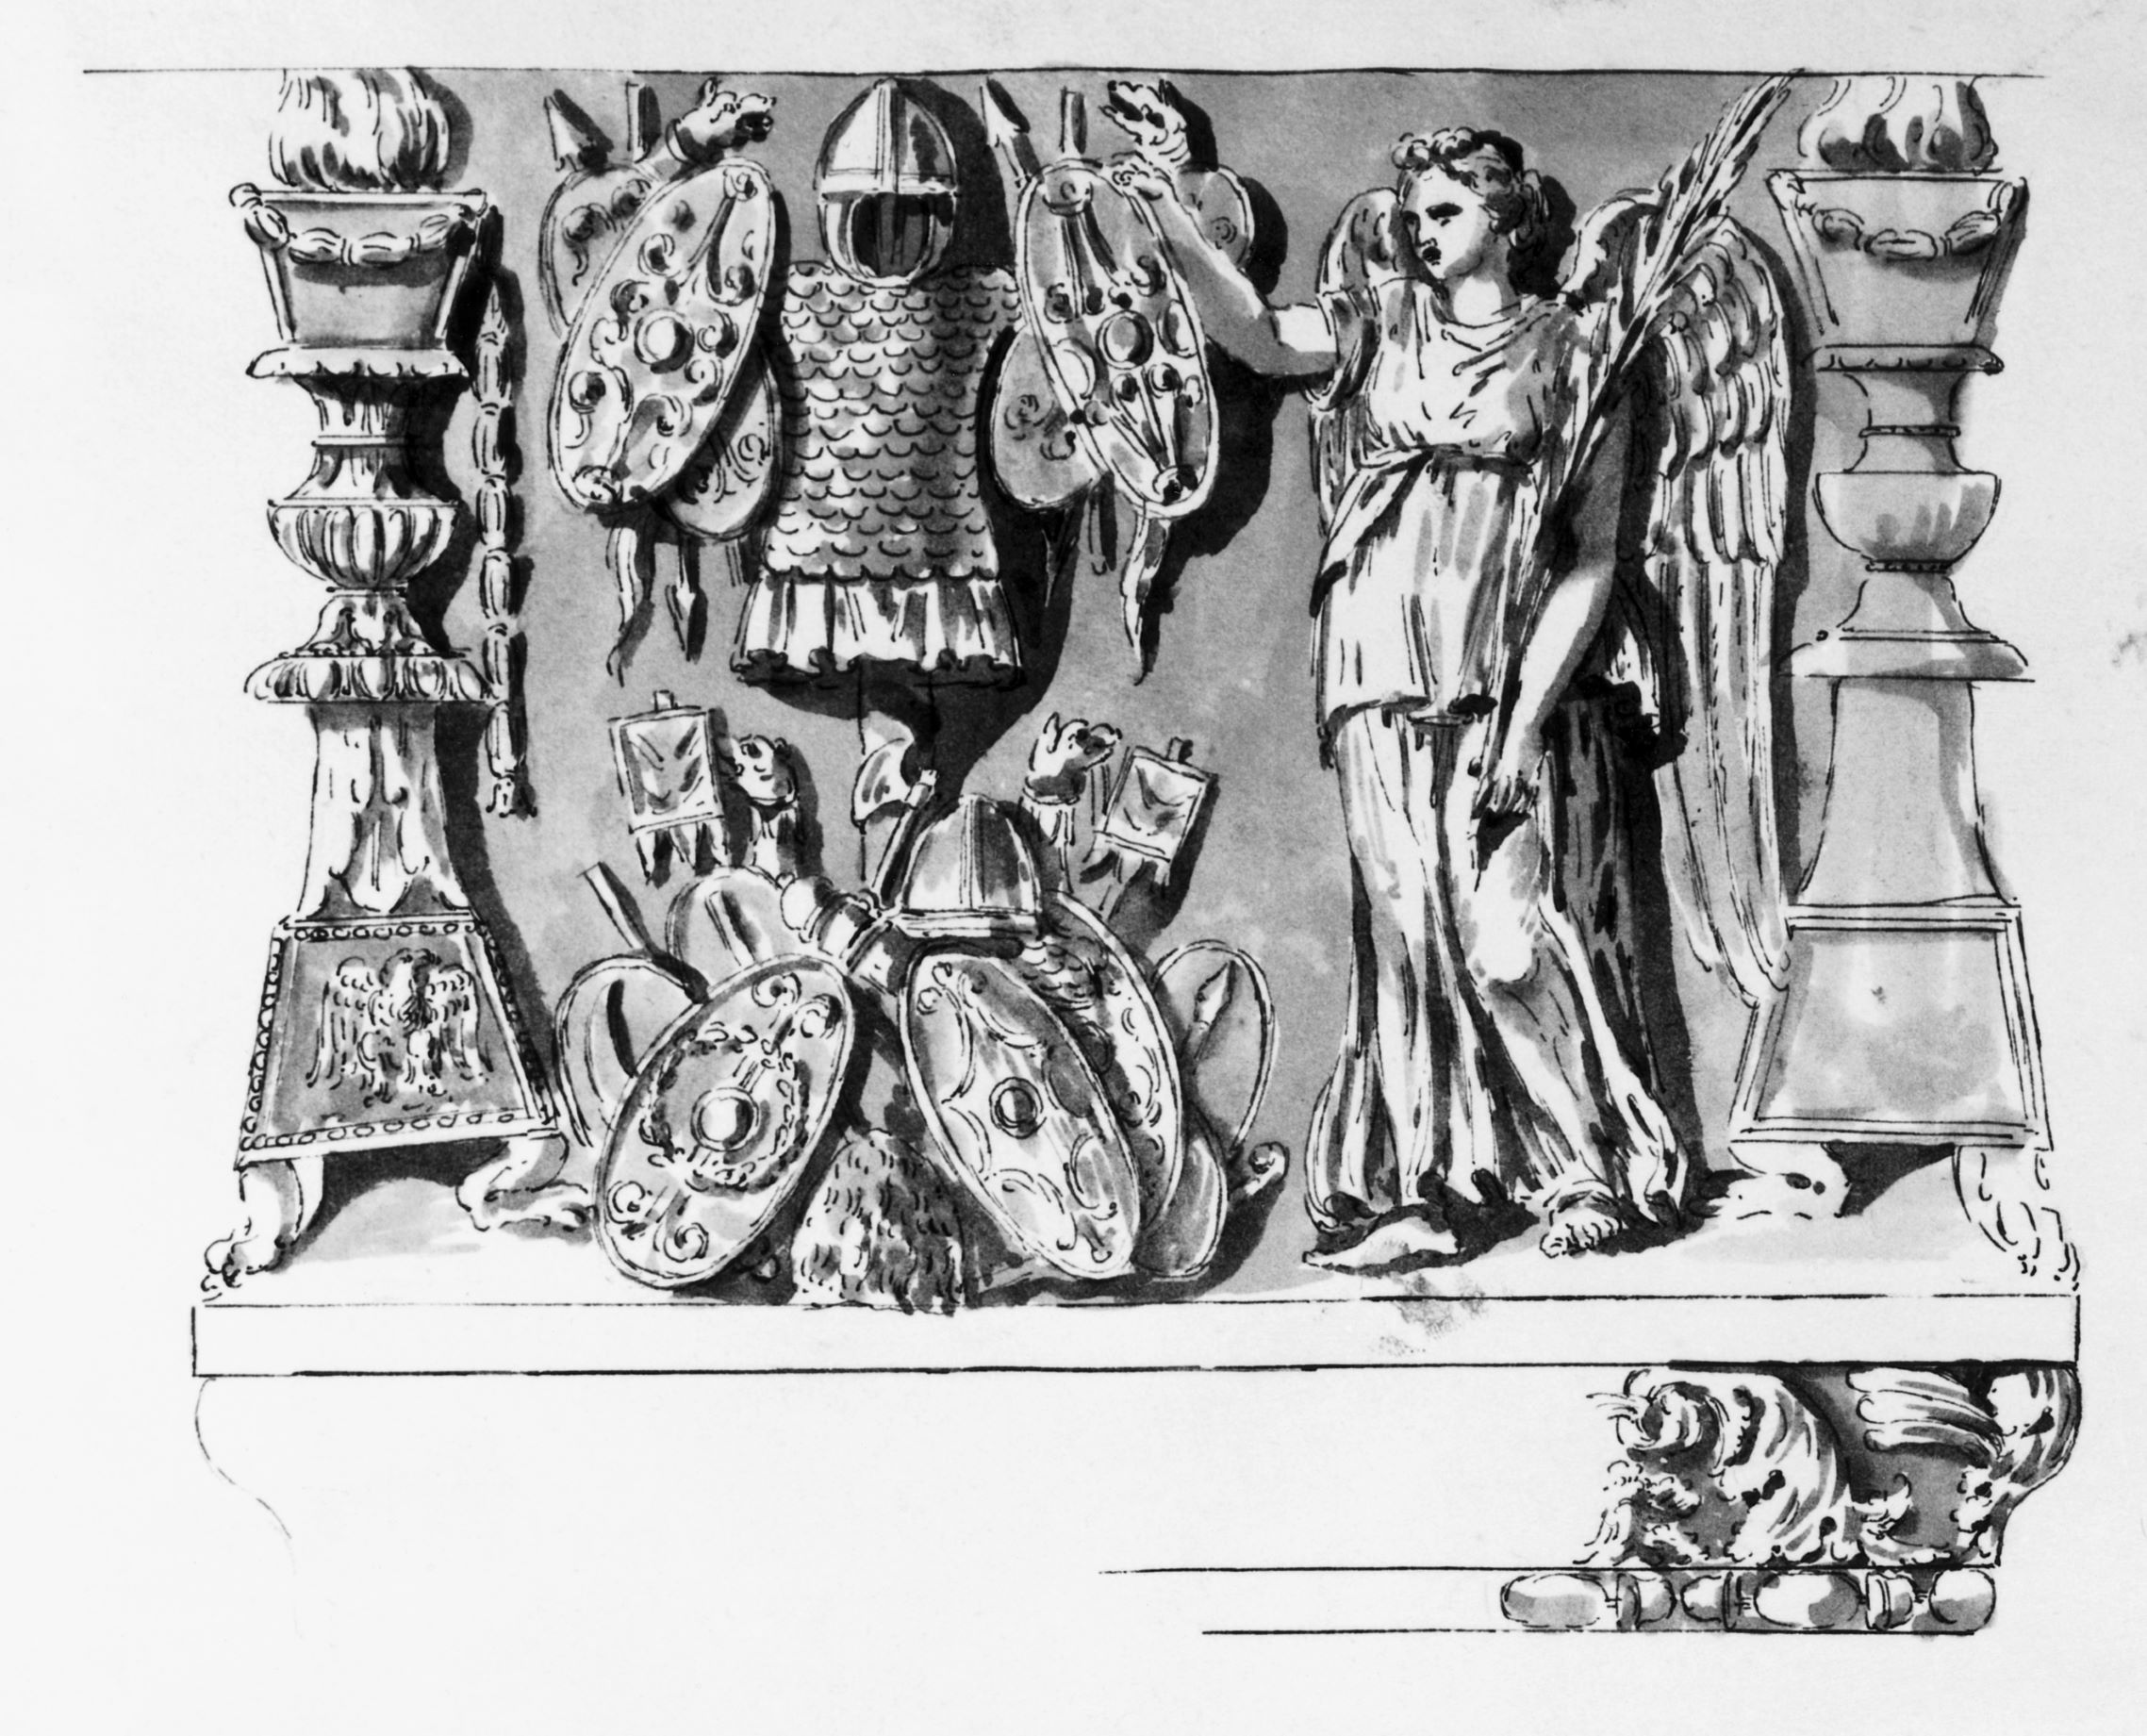 Zeichnung eines Viktoria-Trophäen-Relief. Eine weibliche Figur hält einen Lorbeerkranz. Sie steht vor militärischen Ornamenten.